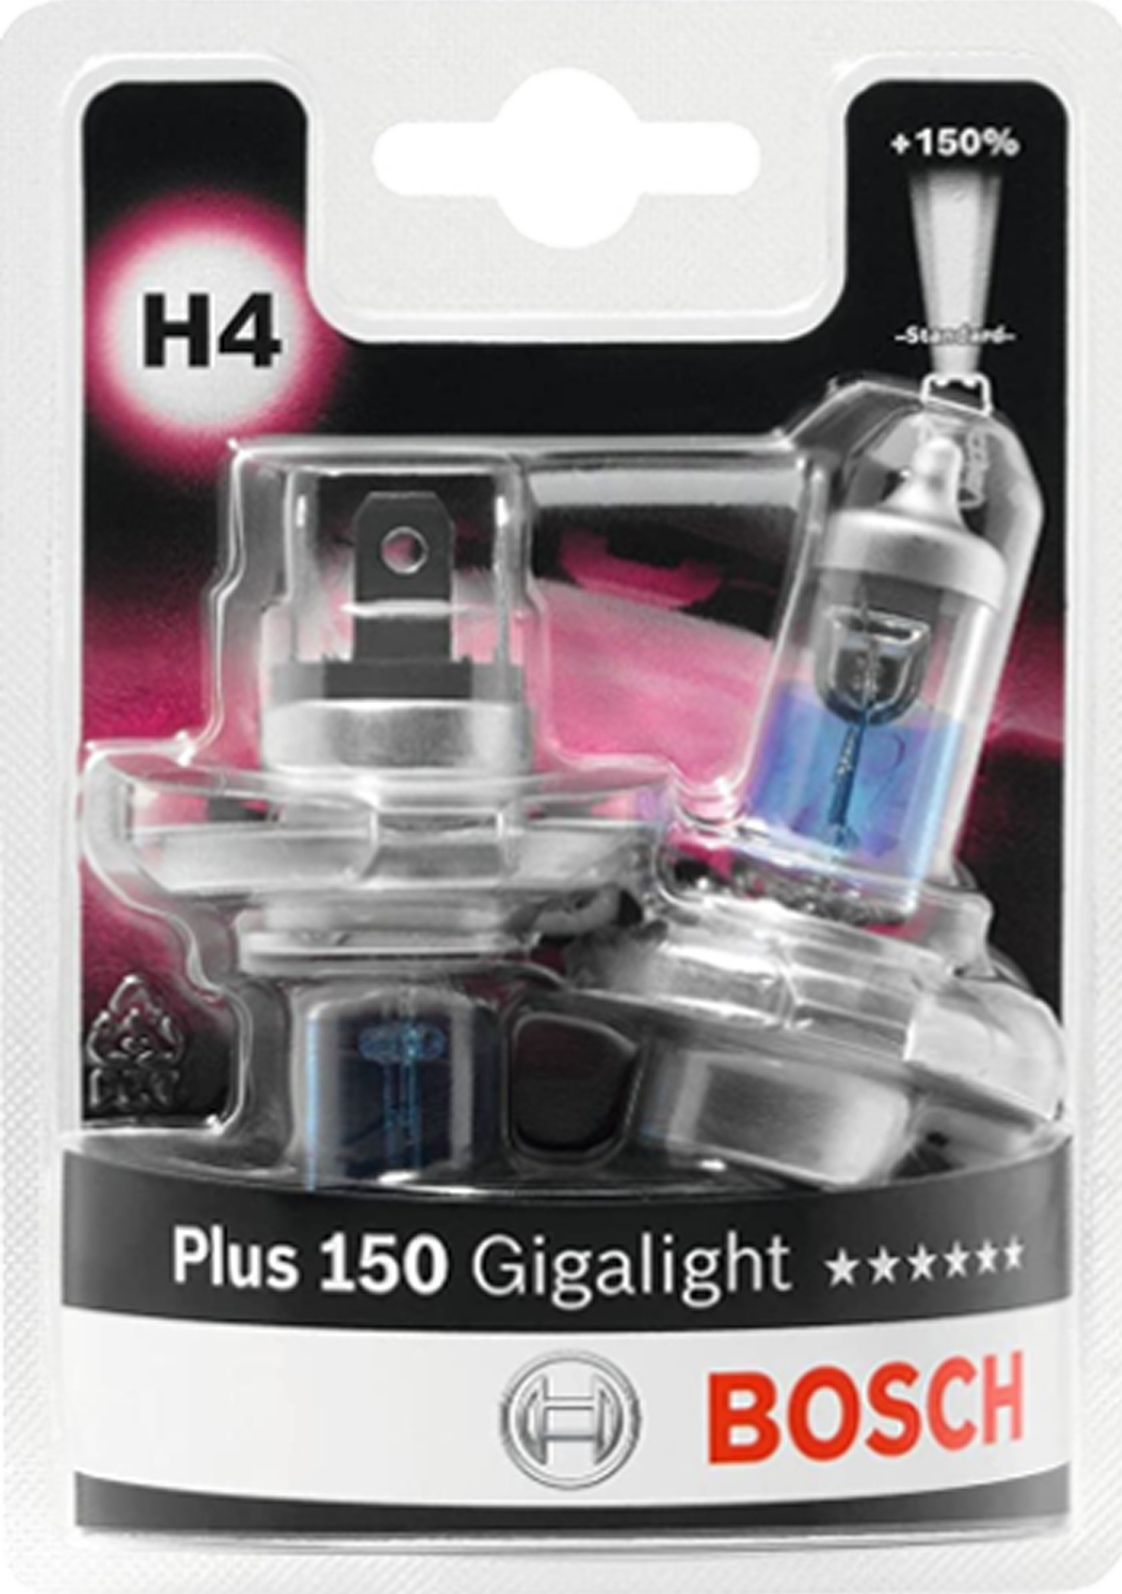 Bild von H4 Plus 150 Gigalight